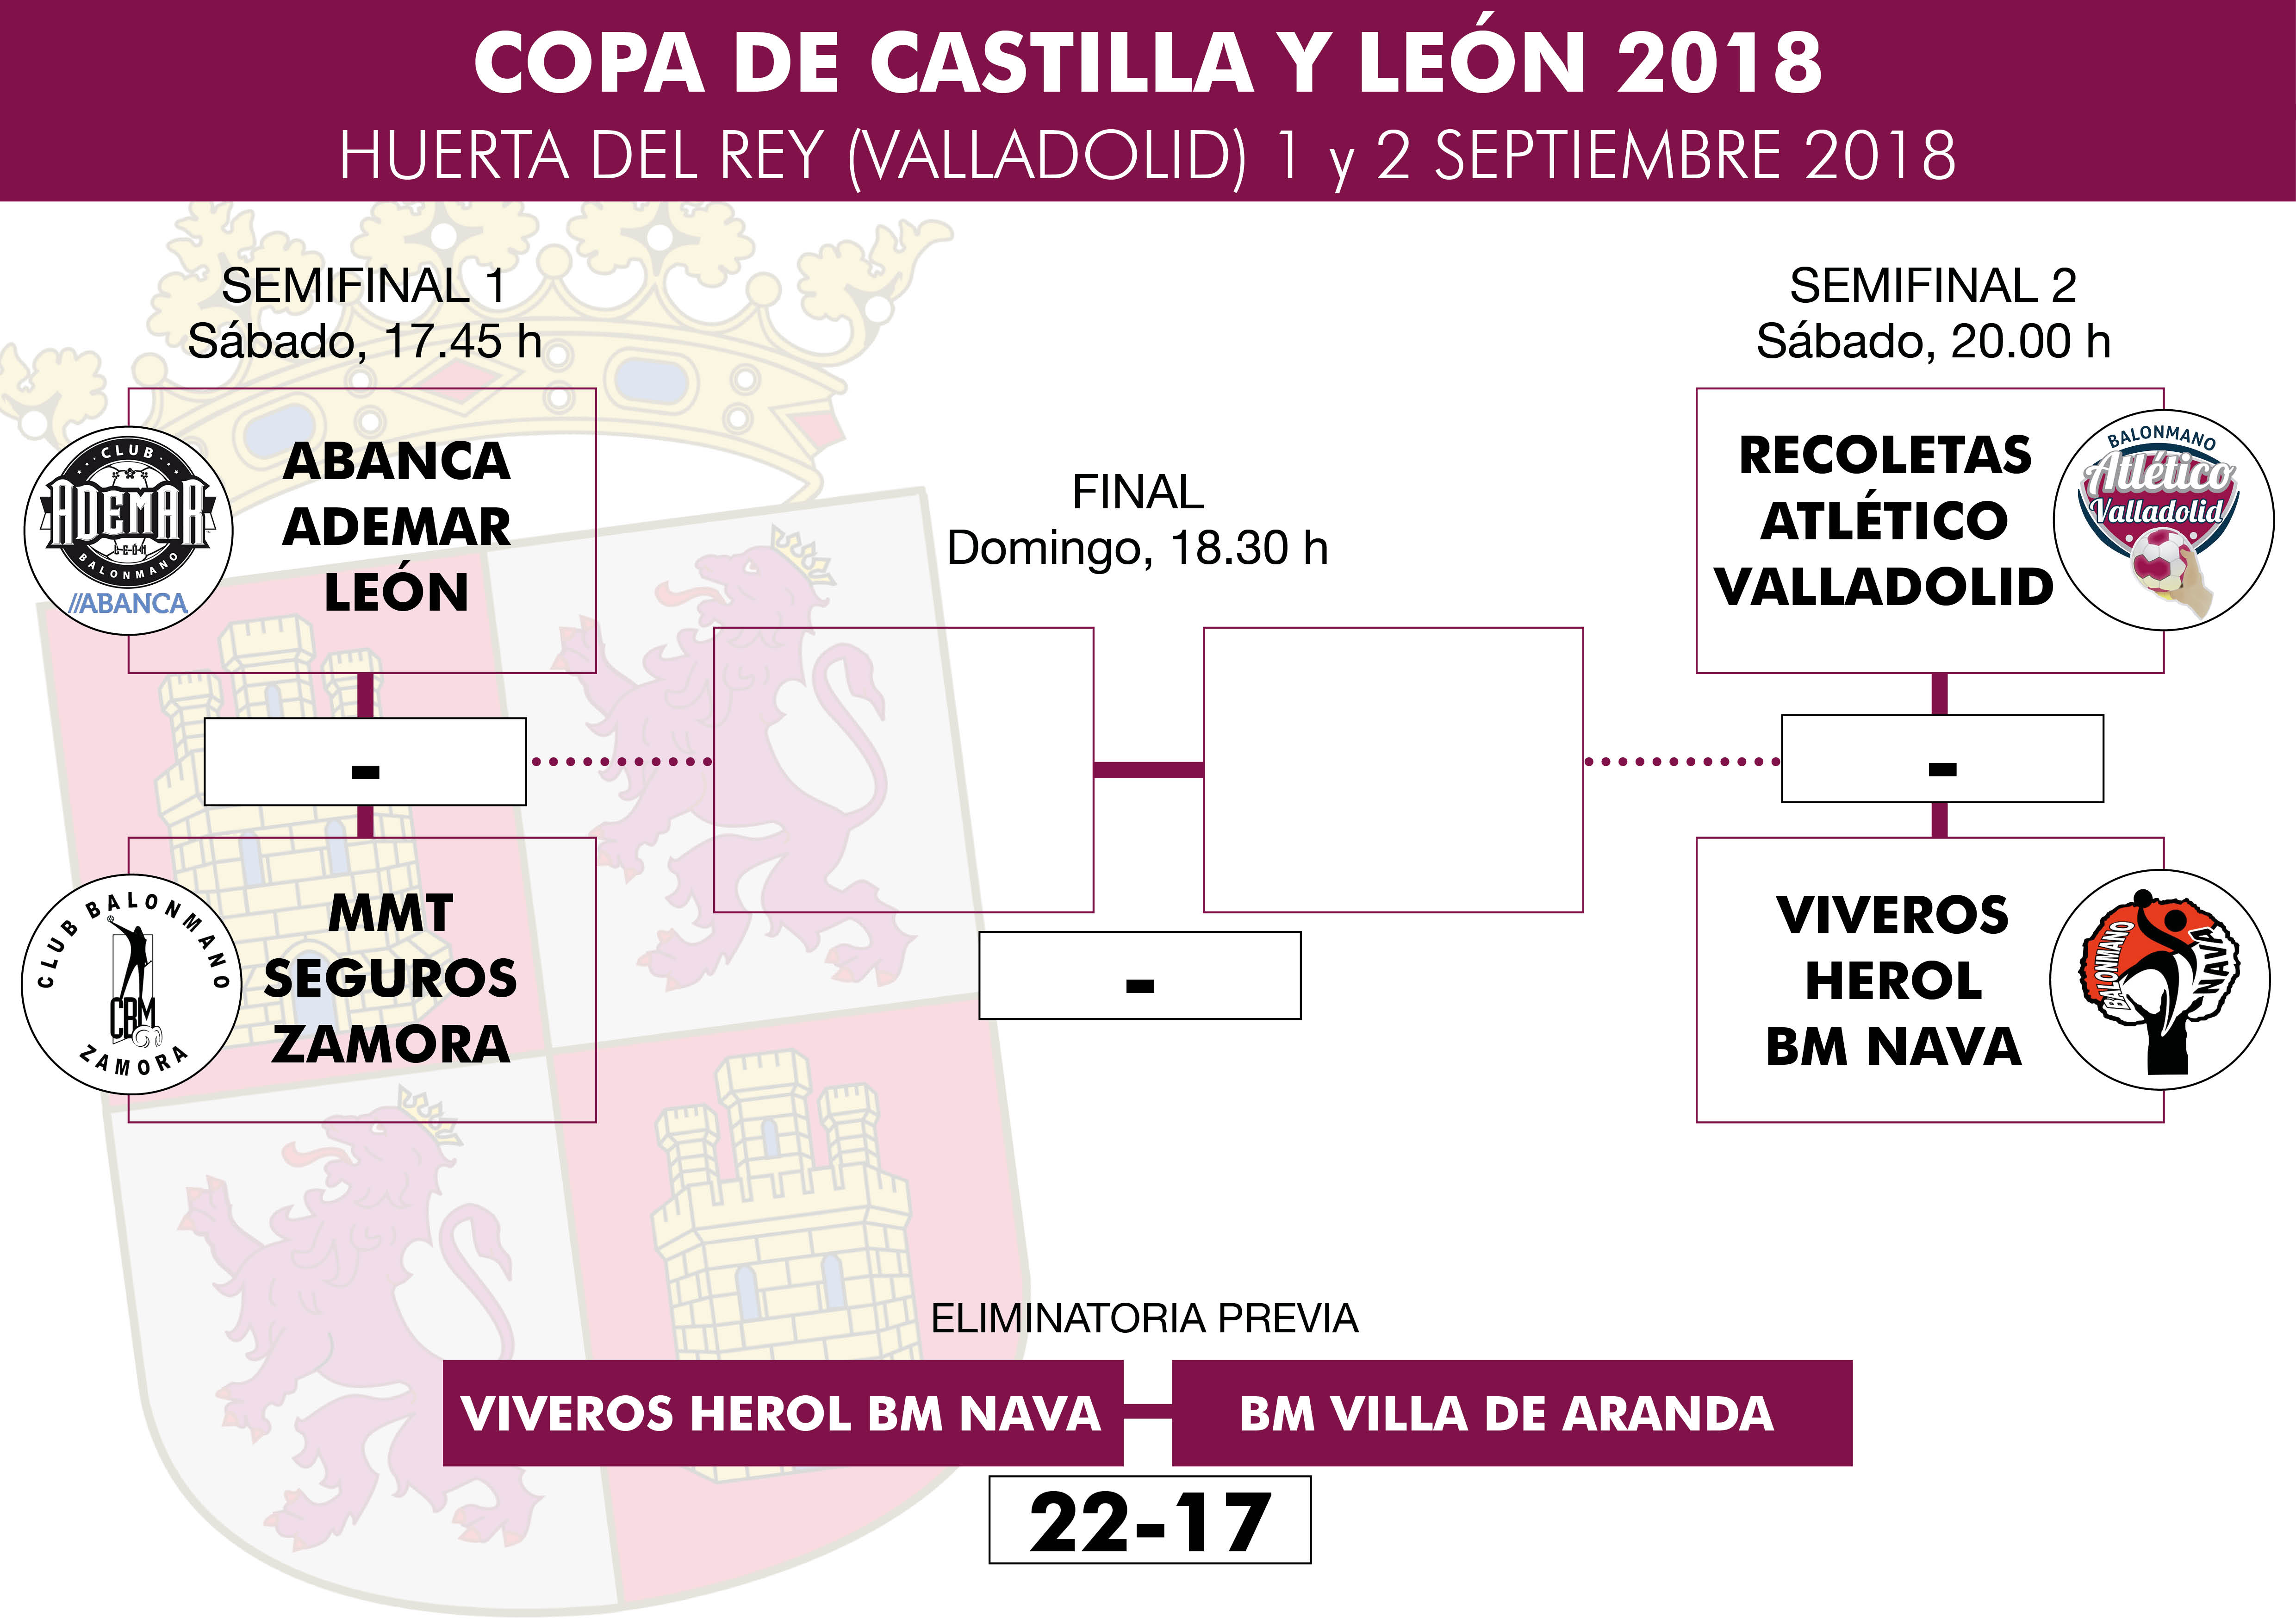 Recoletas Atlético Valladolid-Viveros Herol BM Nava y Abanca Ademar León-MMT Seguros Zamora, semifinales de la Copa de Castilla y León 2018 | Galería 1 / 5